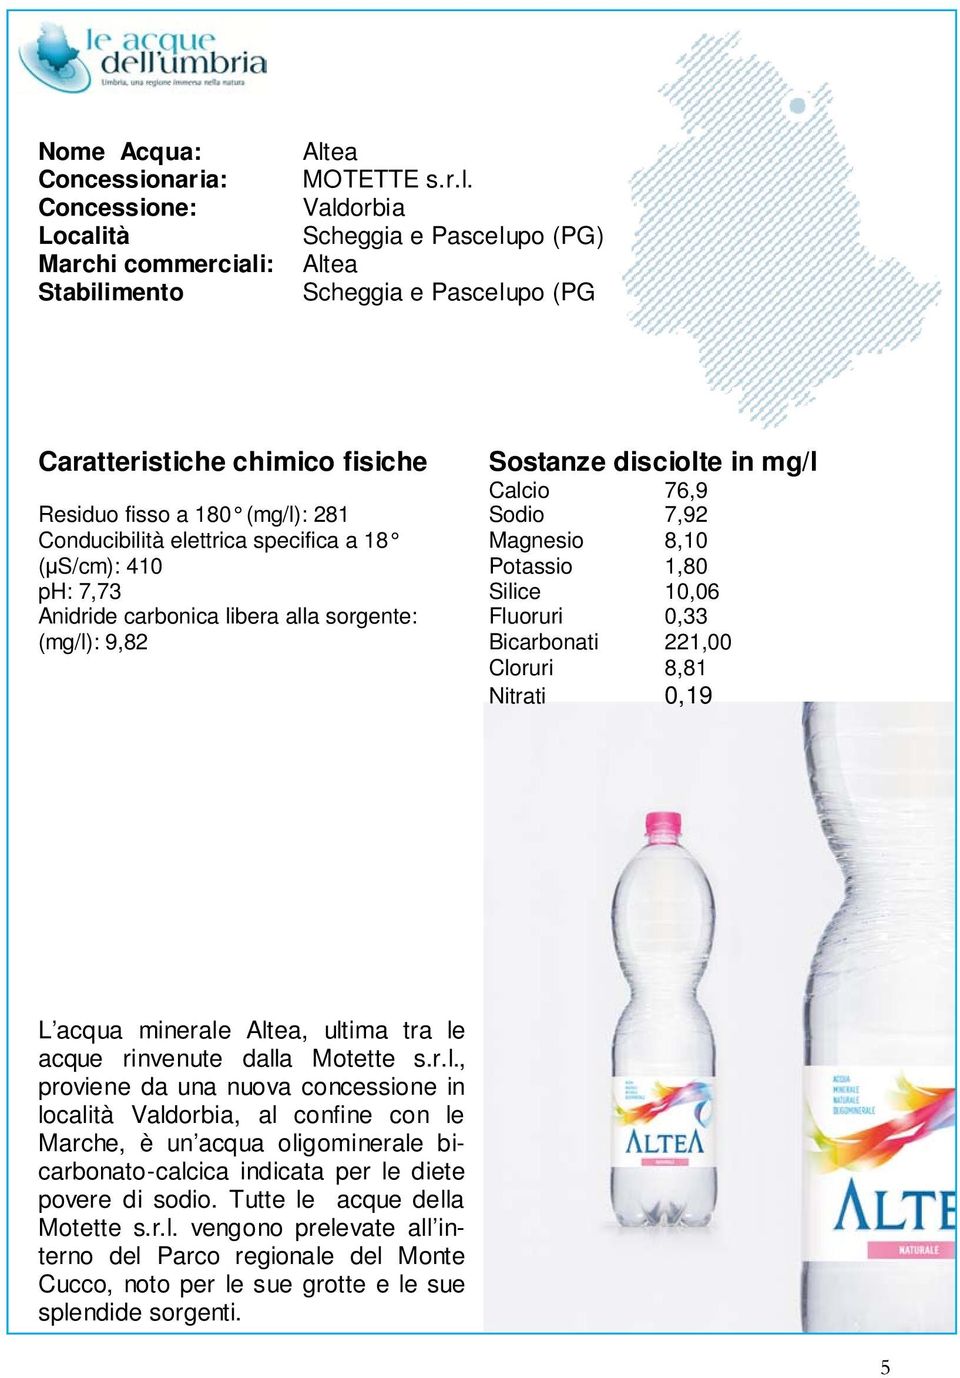 le acque rinvenute dalla Motette s.r.l., proviene da una nuova concessione in località Valdorbia, al confine con le Marche, è un acqua oligominerale bicarbonato-calcica indicata per le diete povere di sodio.